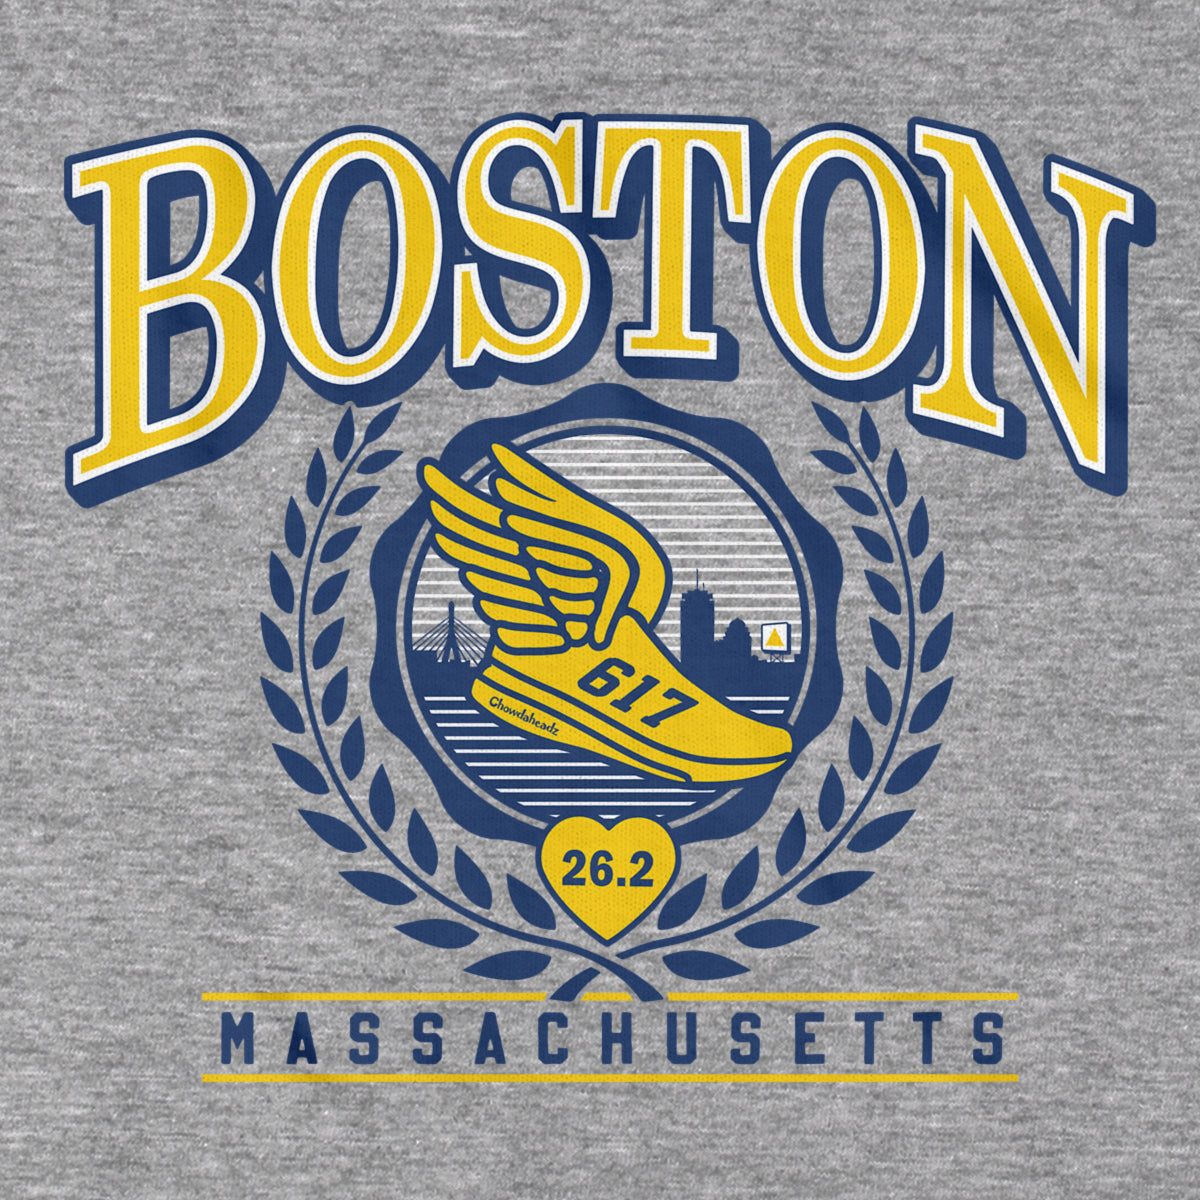 Boston Running Undergrad T-Shirt - Chowdaheadz